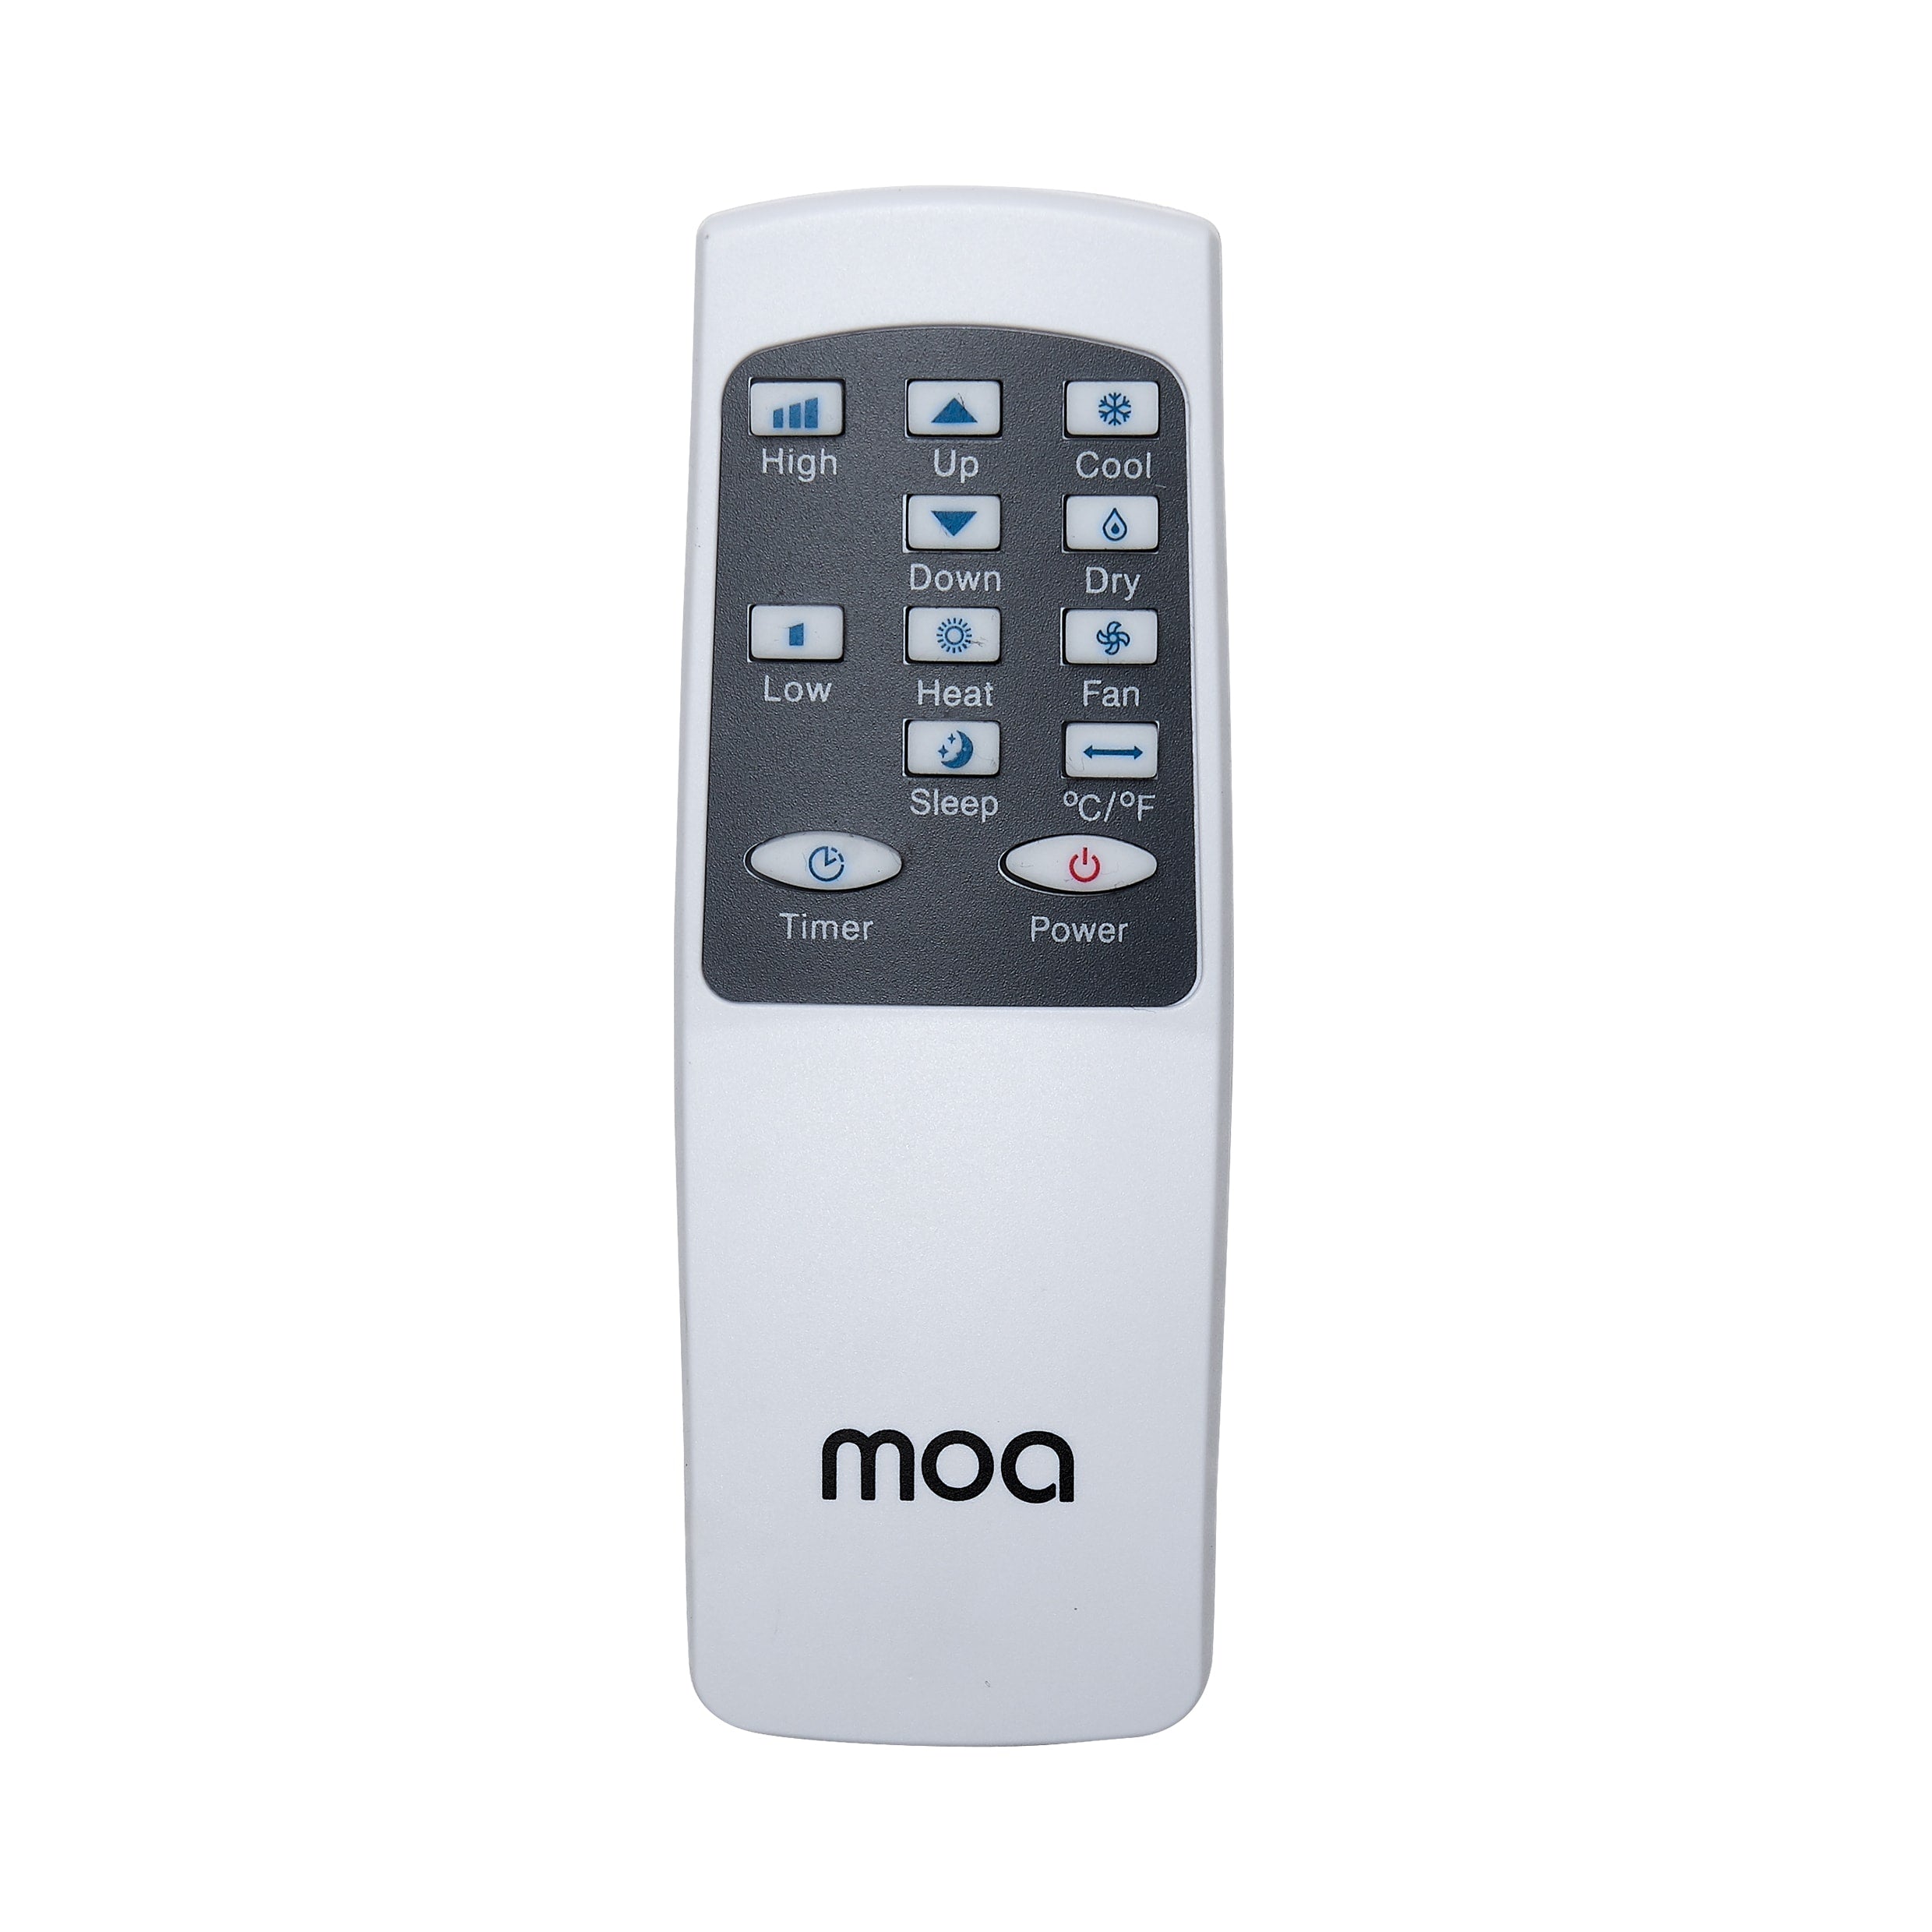 MOA Mobiele Airco - A010